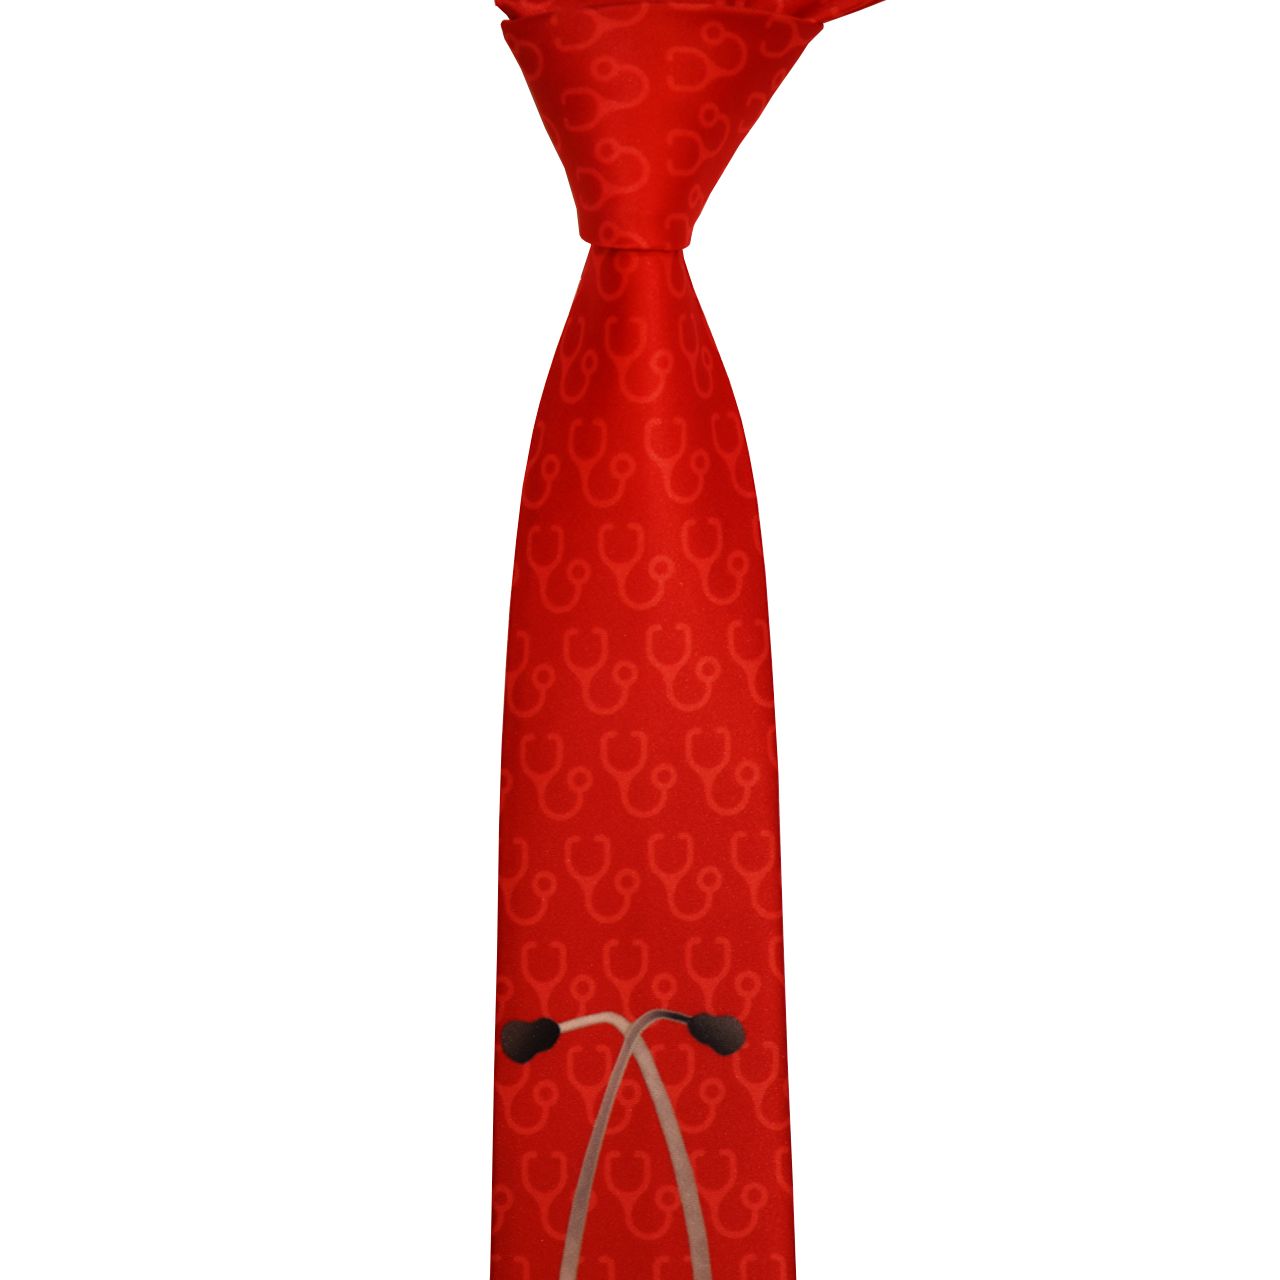 کراوات مردانه طرح گوشی پزشکی -  - 2